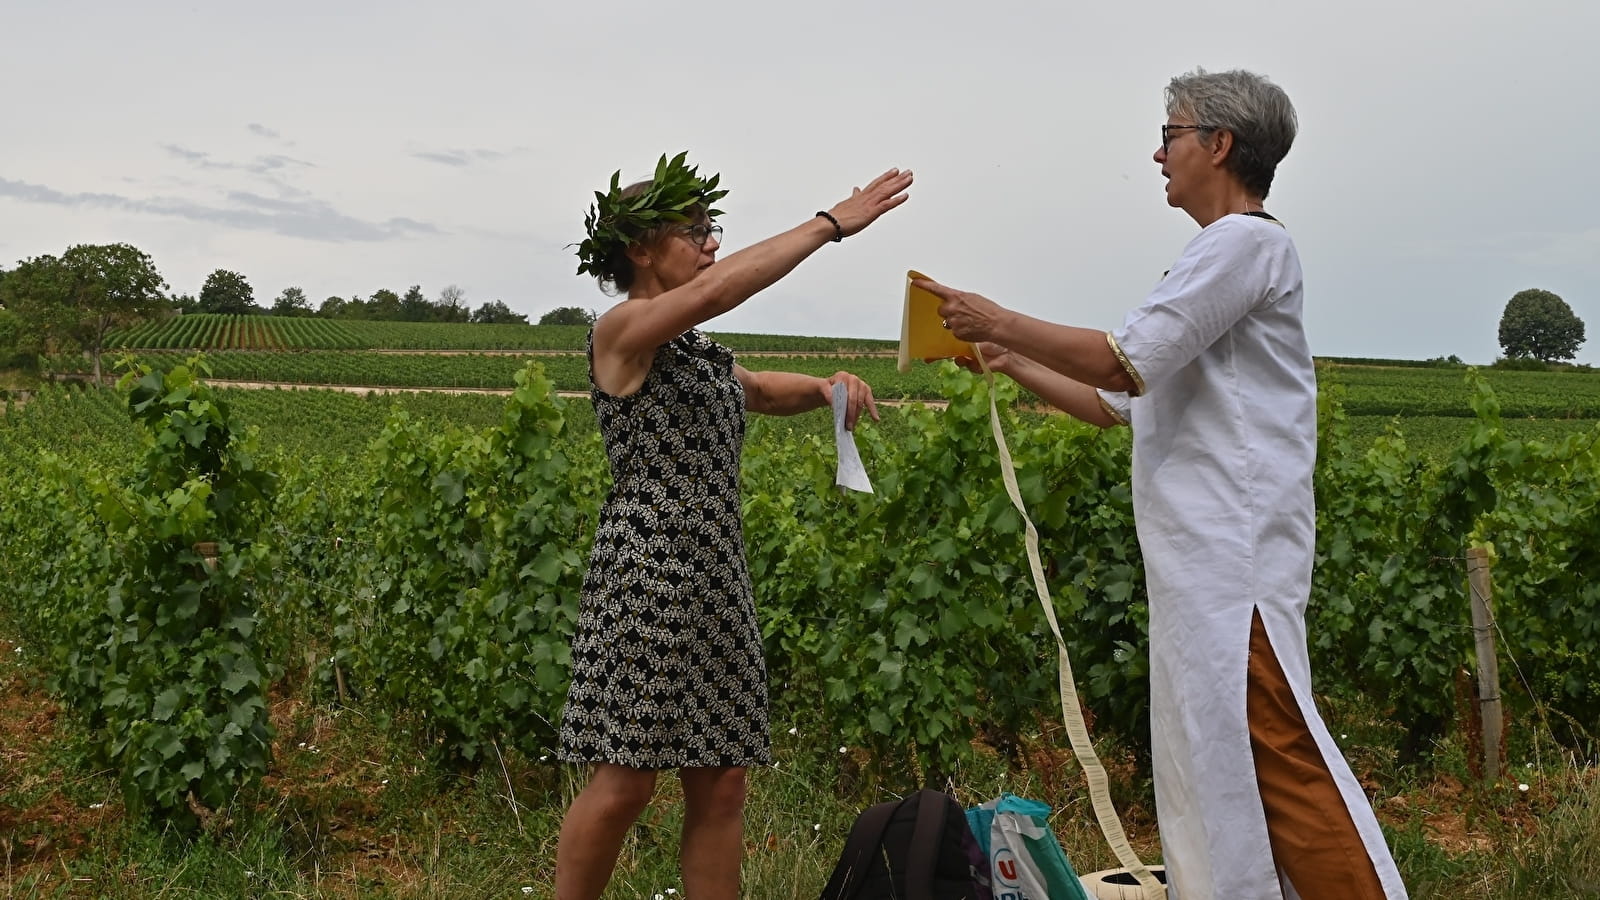 La Clé des sols - Staffel II: Auf der Suche nach dem verlorenen Pinot